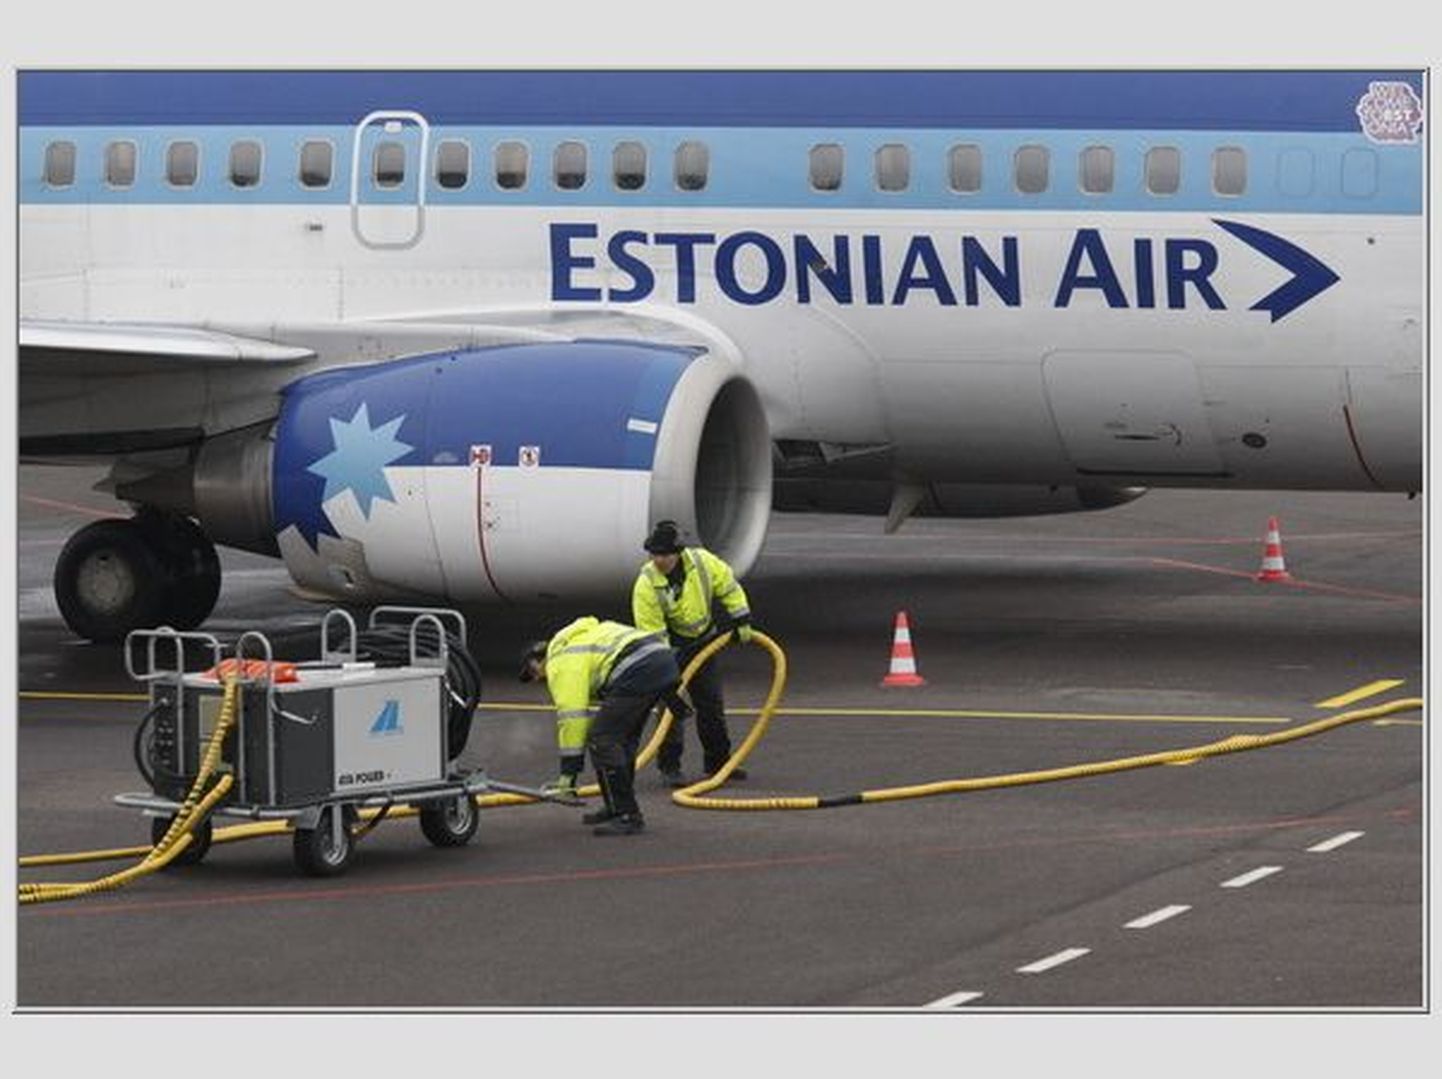 Estonian Airi lennukid lähevad lendu ainult siis, kui ollakse veendunud, et lend tuleb täiesti ohutu.